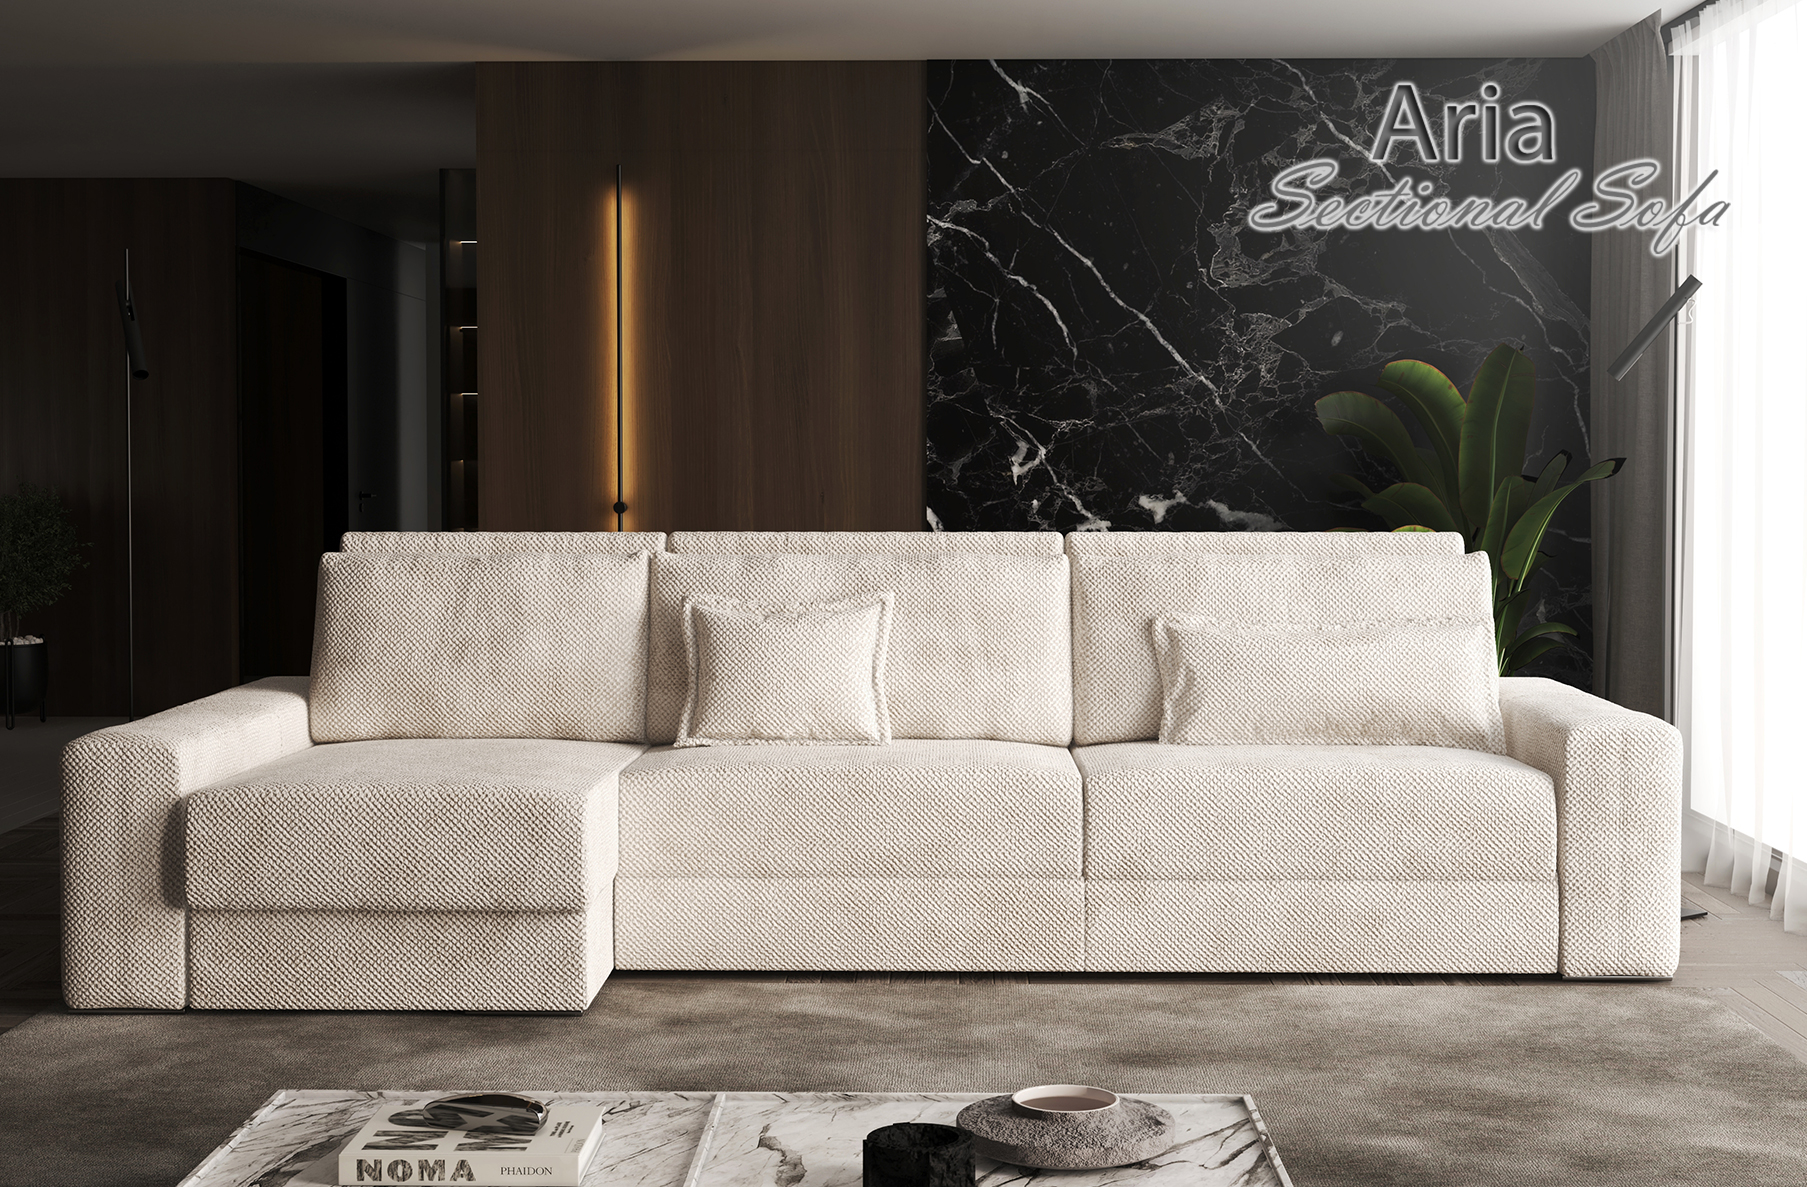 Aria Sectional Sofa, Cheap